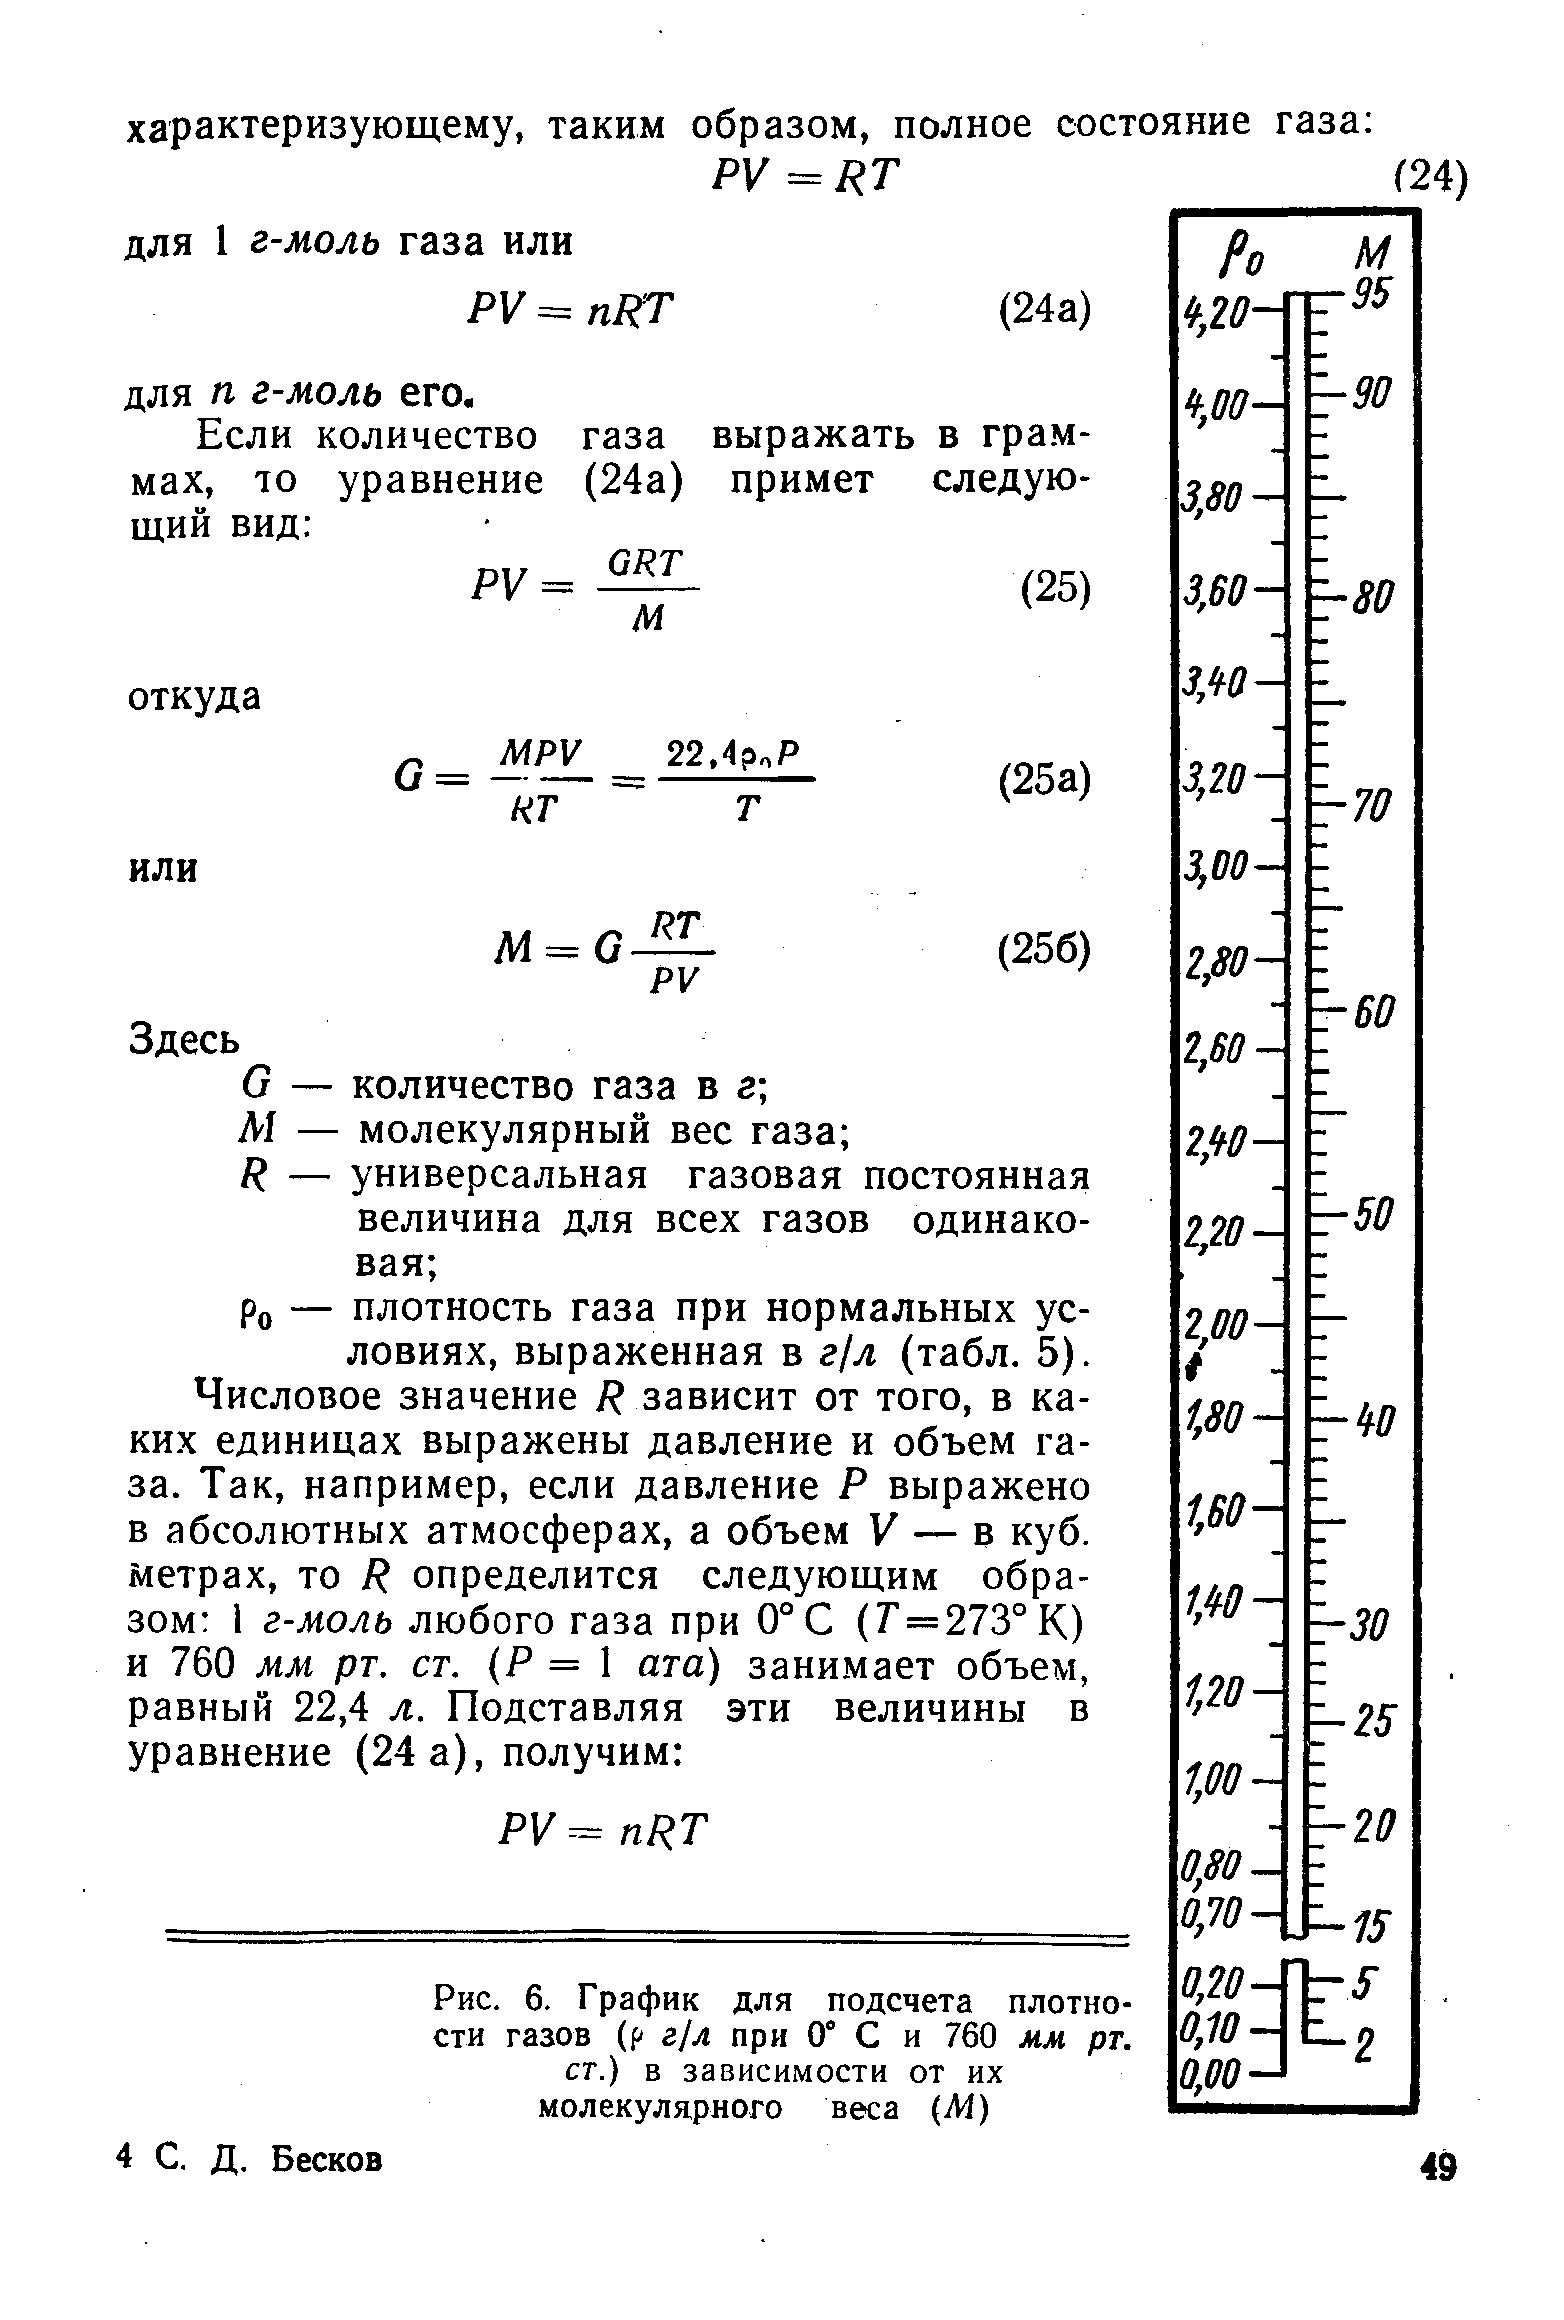 Ро — плотность газа при нормальных условиях, выраженная в г/л (табл. 5).